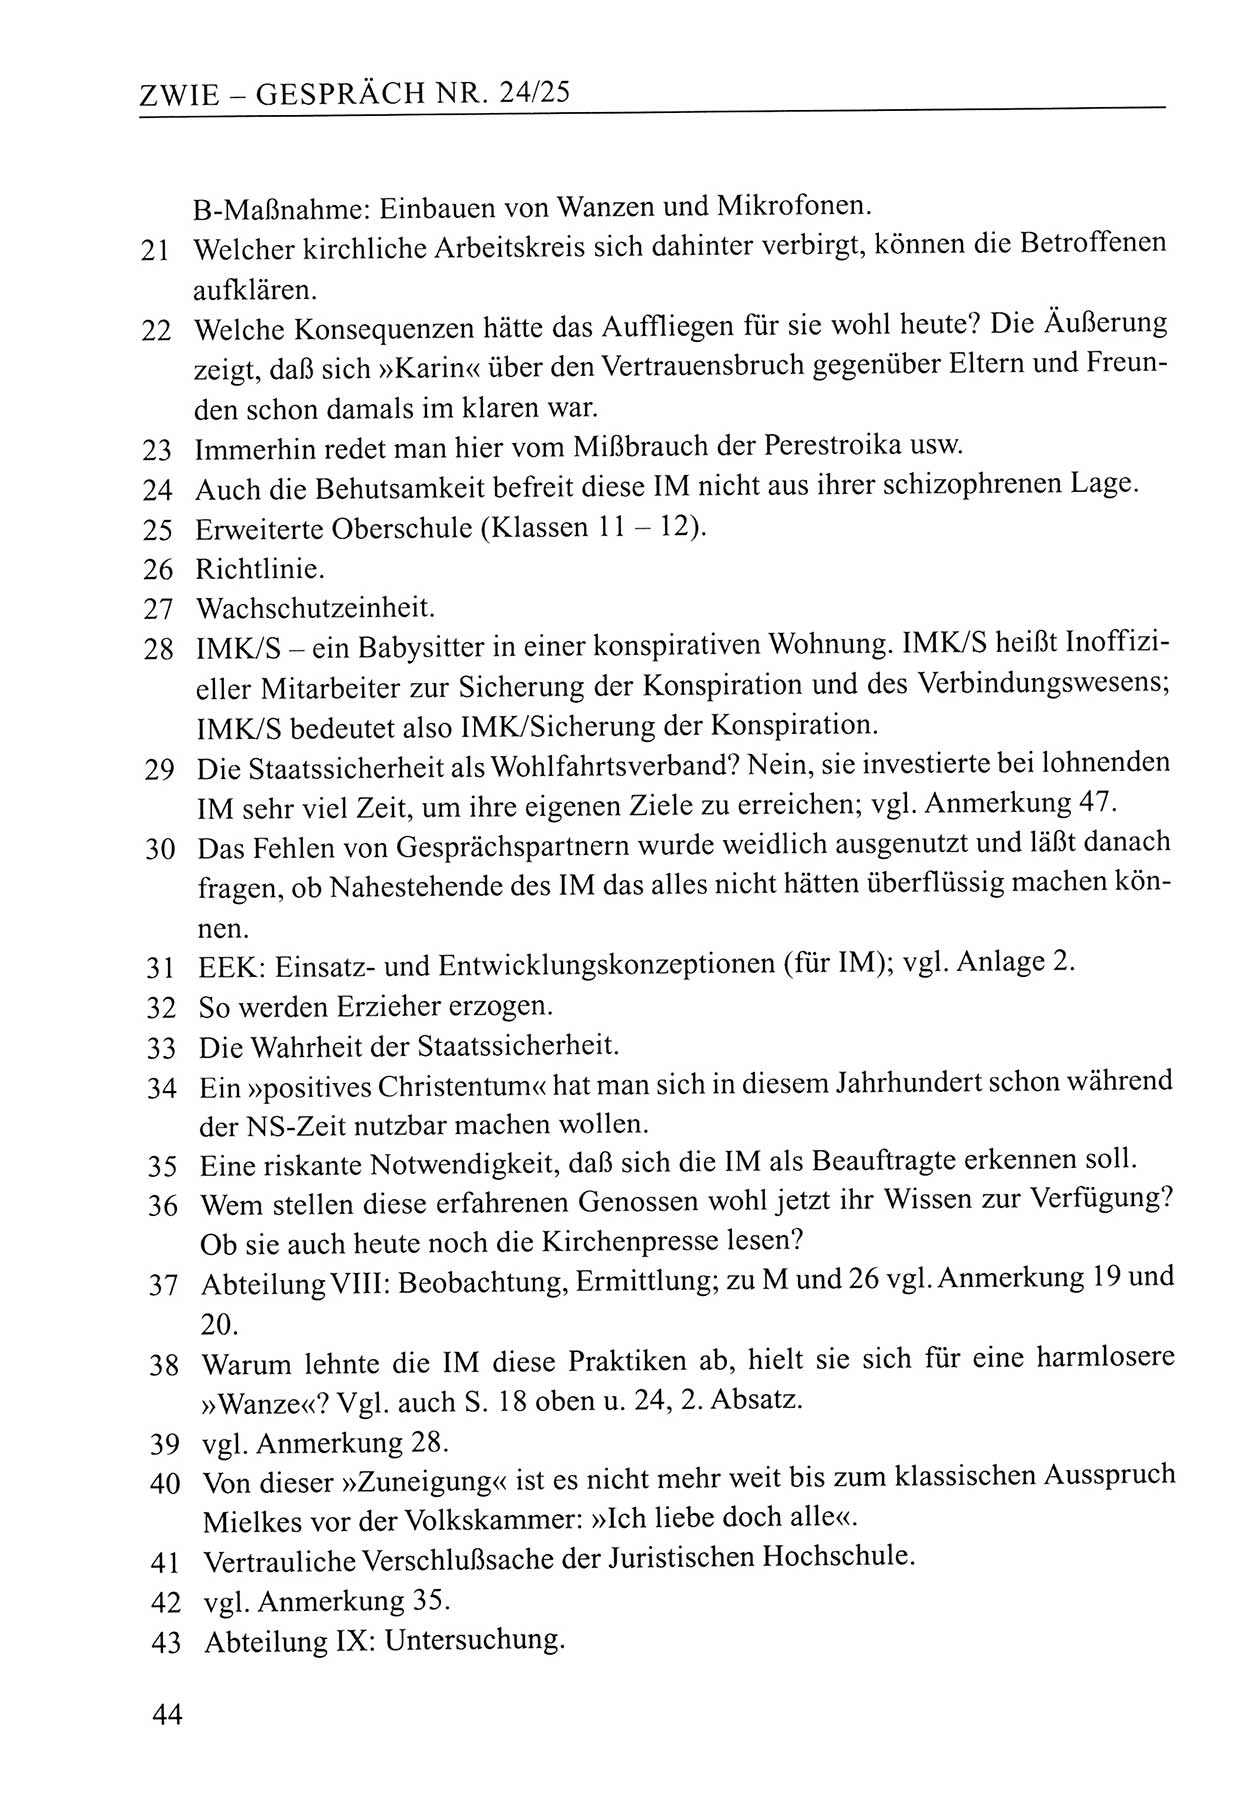 Zwie-Gespräch, Beiträge zum Umgang mit der Staatssicherheits-Vergangenheit [Deutsche Demokratische Republik (DDR)], Ausgabe Nr. 24/25, Berlin 1994, Seite 44 (Zwie-Gespr. Ausg. 24/25 1994, S. 44)